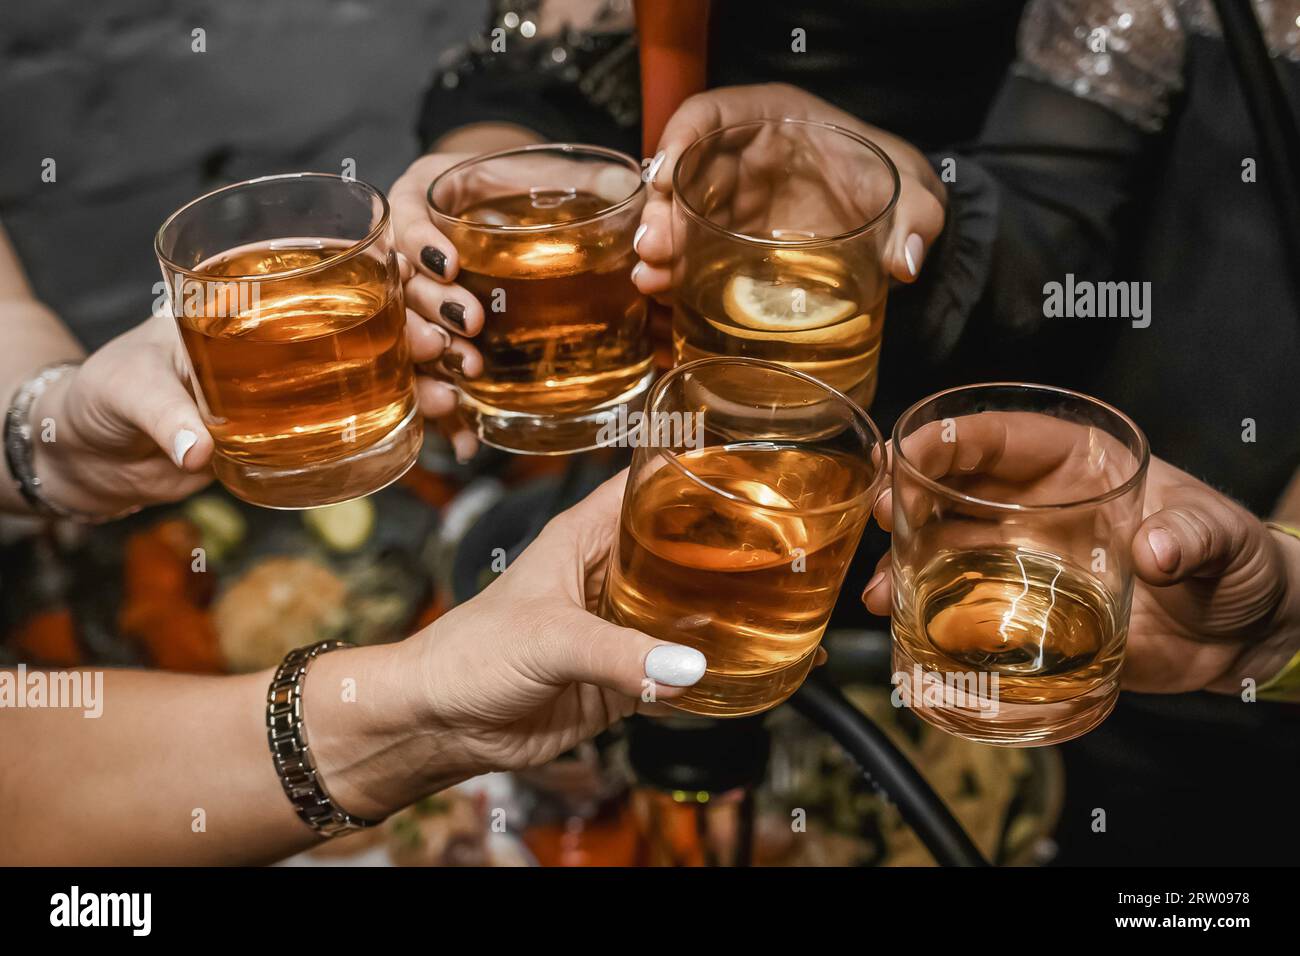 Un groupe de personnes au festival clink des verres avec des boissons alcoolisées, rencontrer des amis, l'atmosphère de l'anniversaire du week-end. Banque D'Images